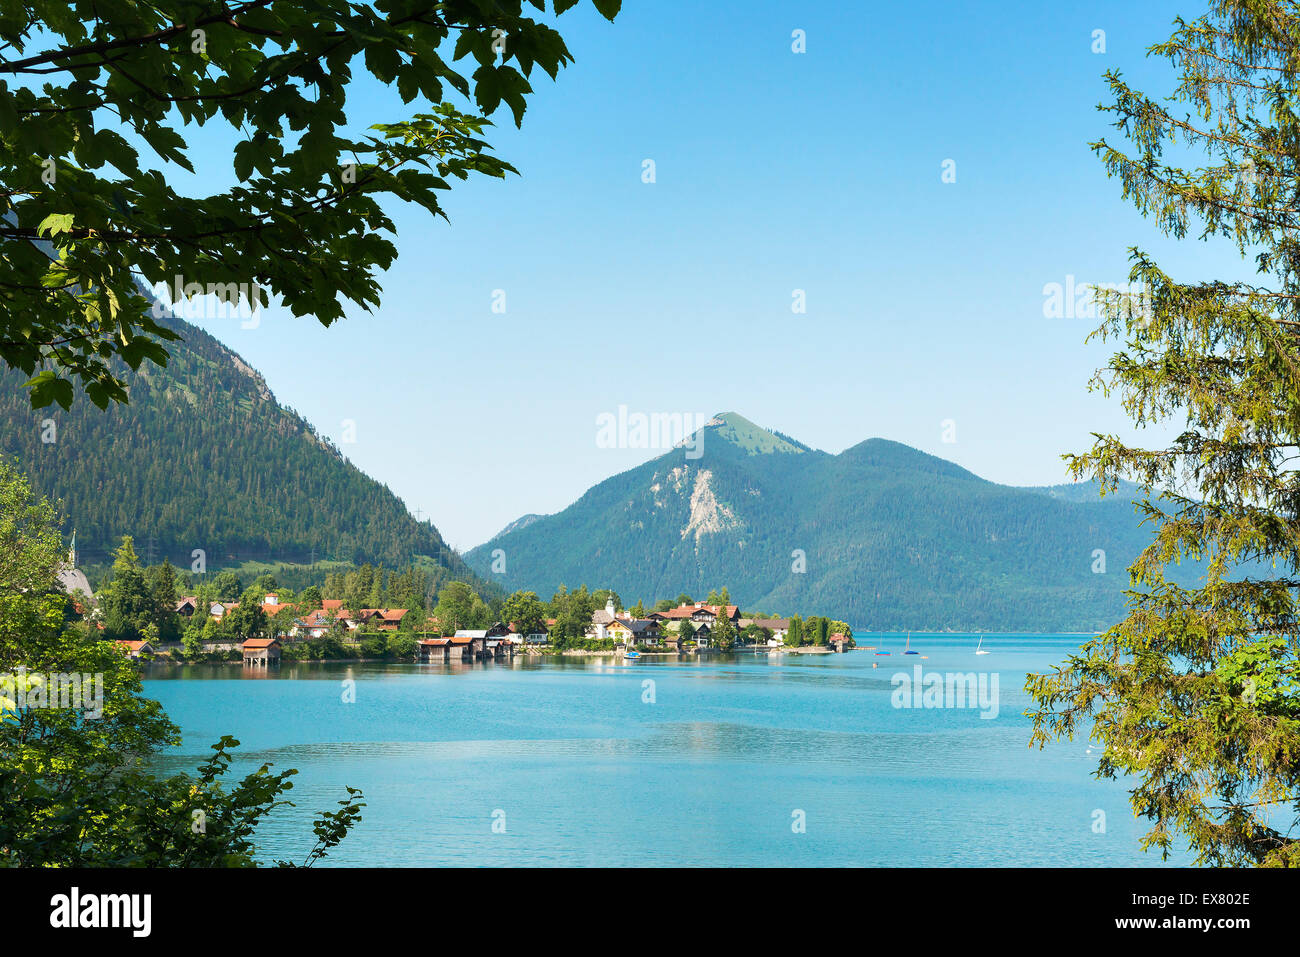 Blick auf den See Walchensee und dem Berg Jochberg in Bayern, Deutschland Stockfoto